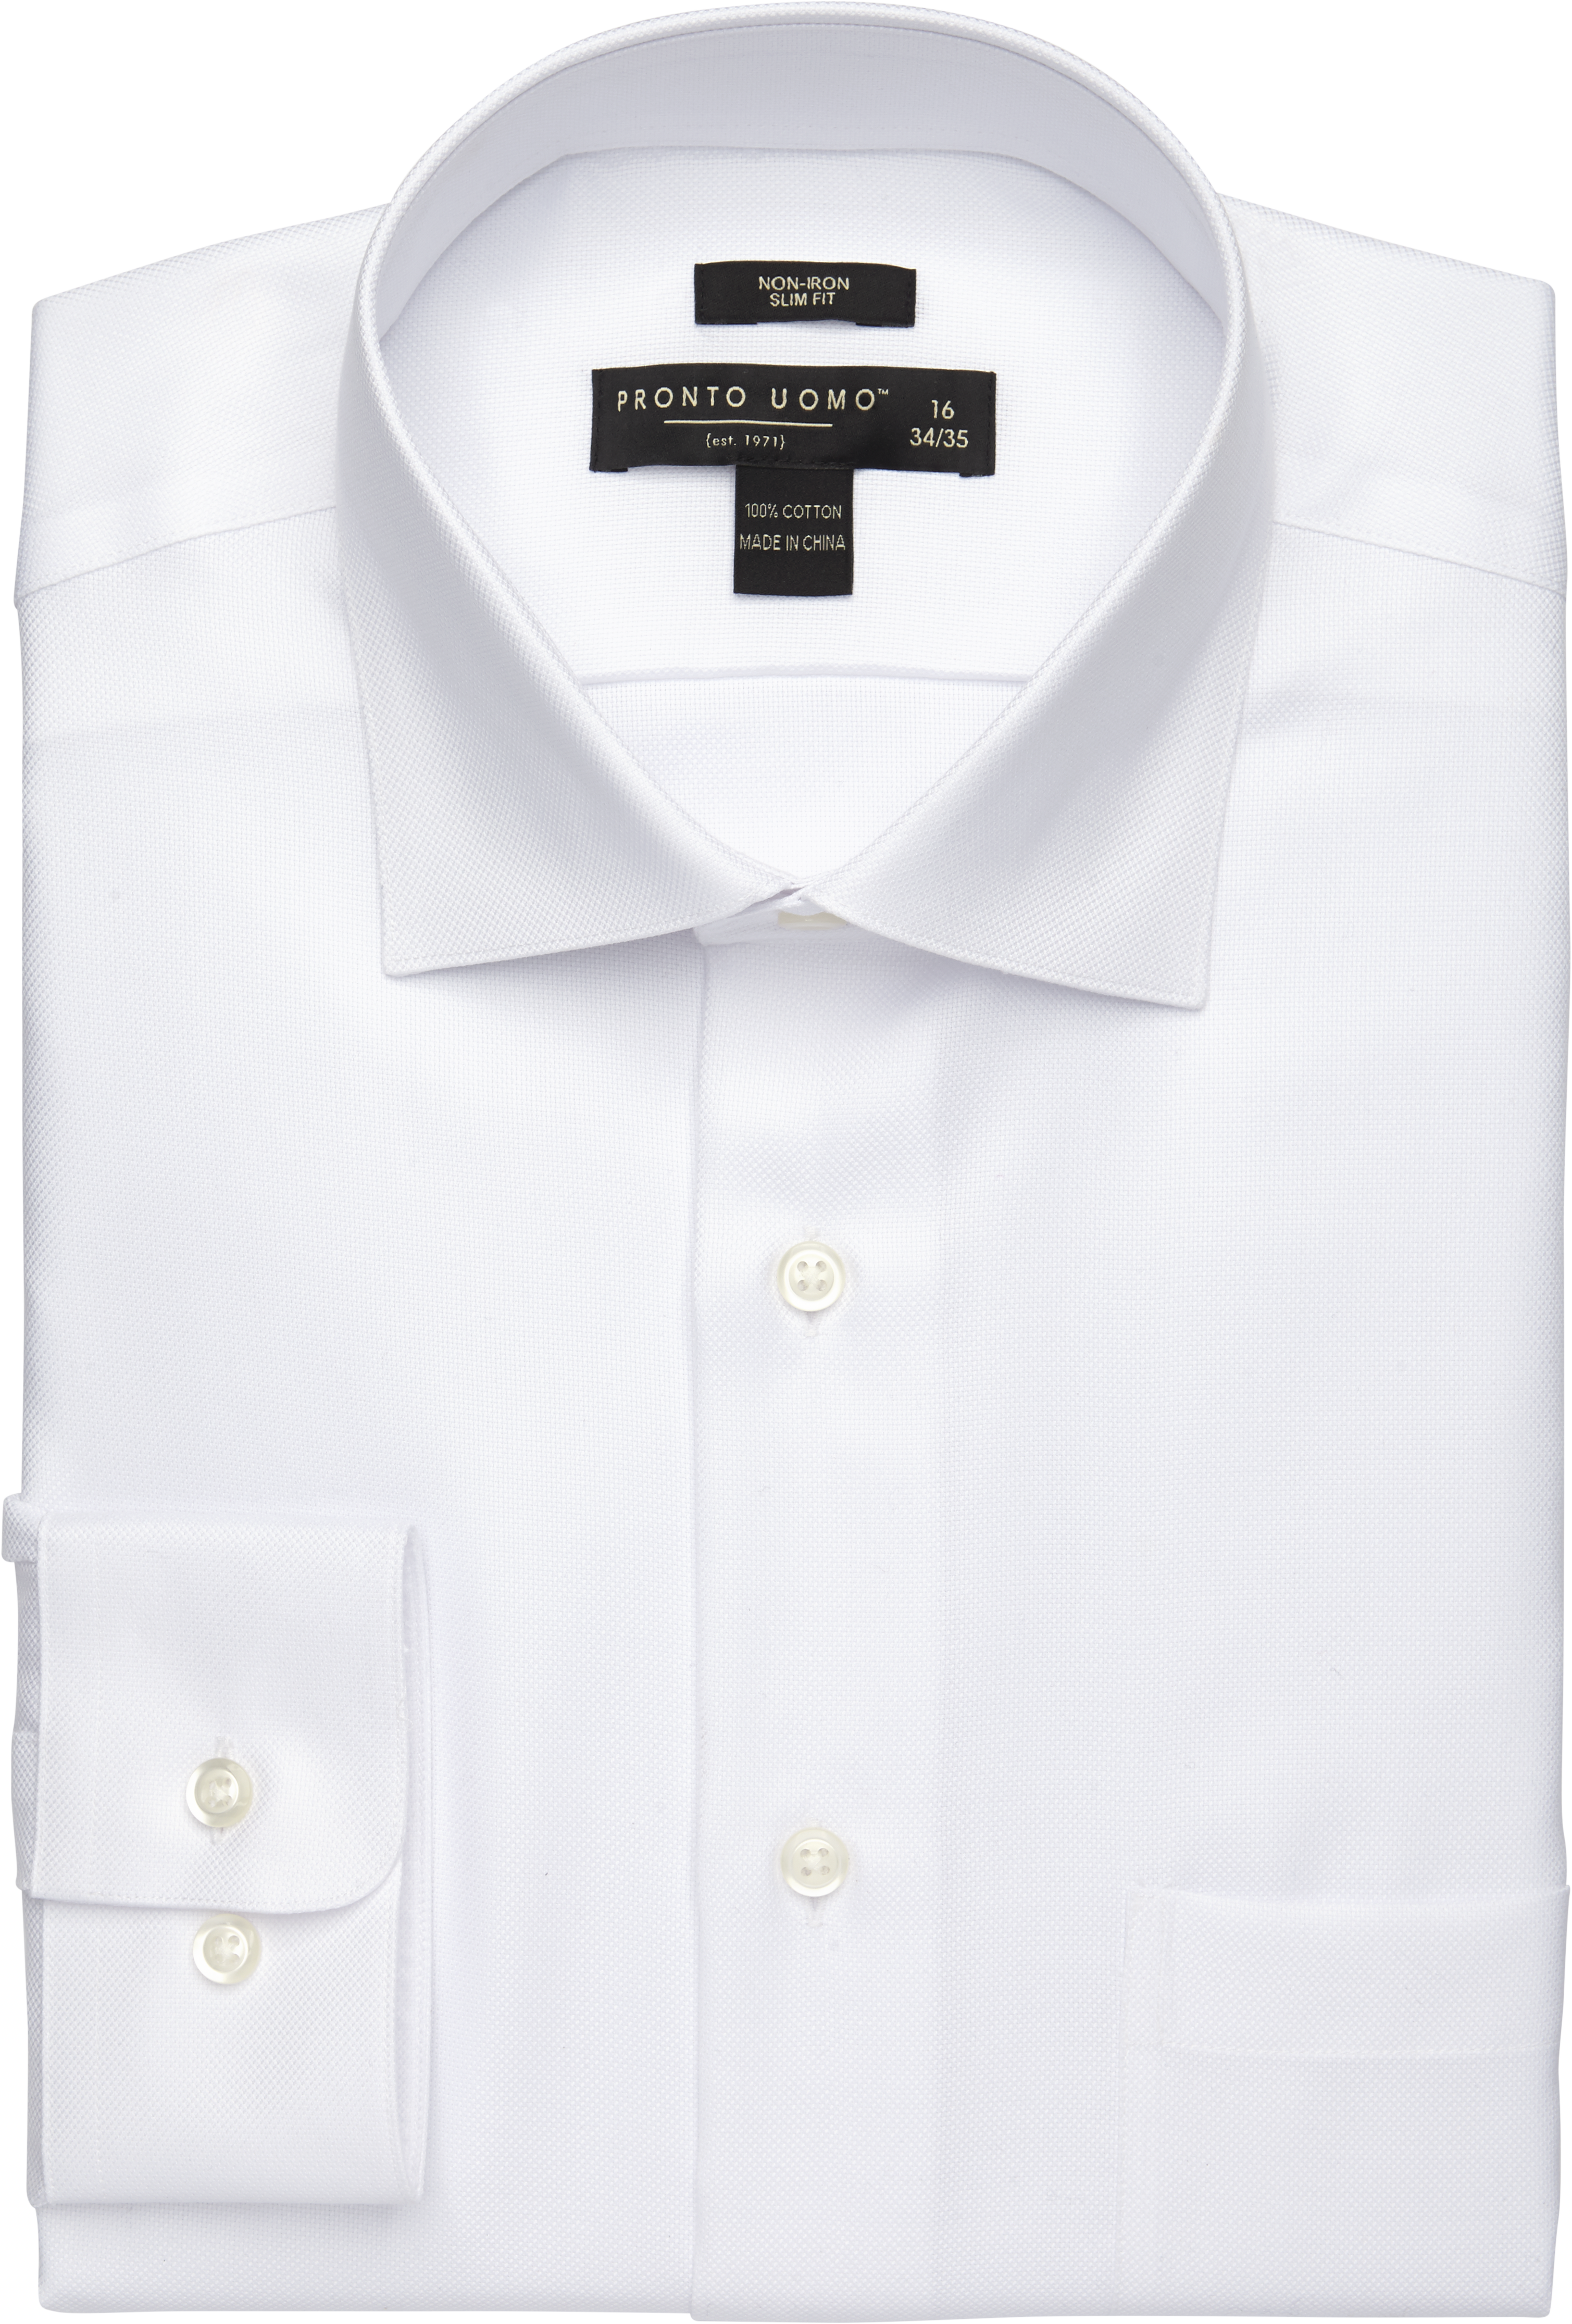 Initiatief complicaties Begroeten Pronto Uomo Slim Fit Queen's Oxford Dress Shirt, White - Men's Featured |  Men's Wearhouse